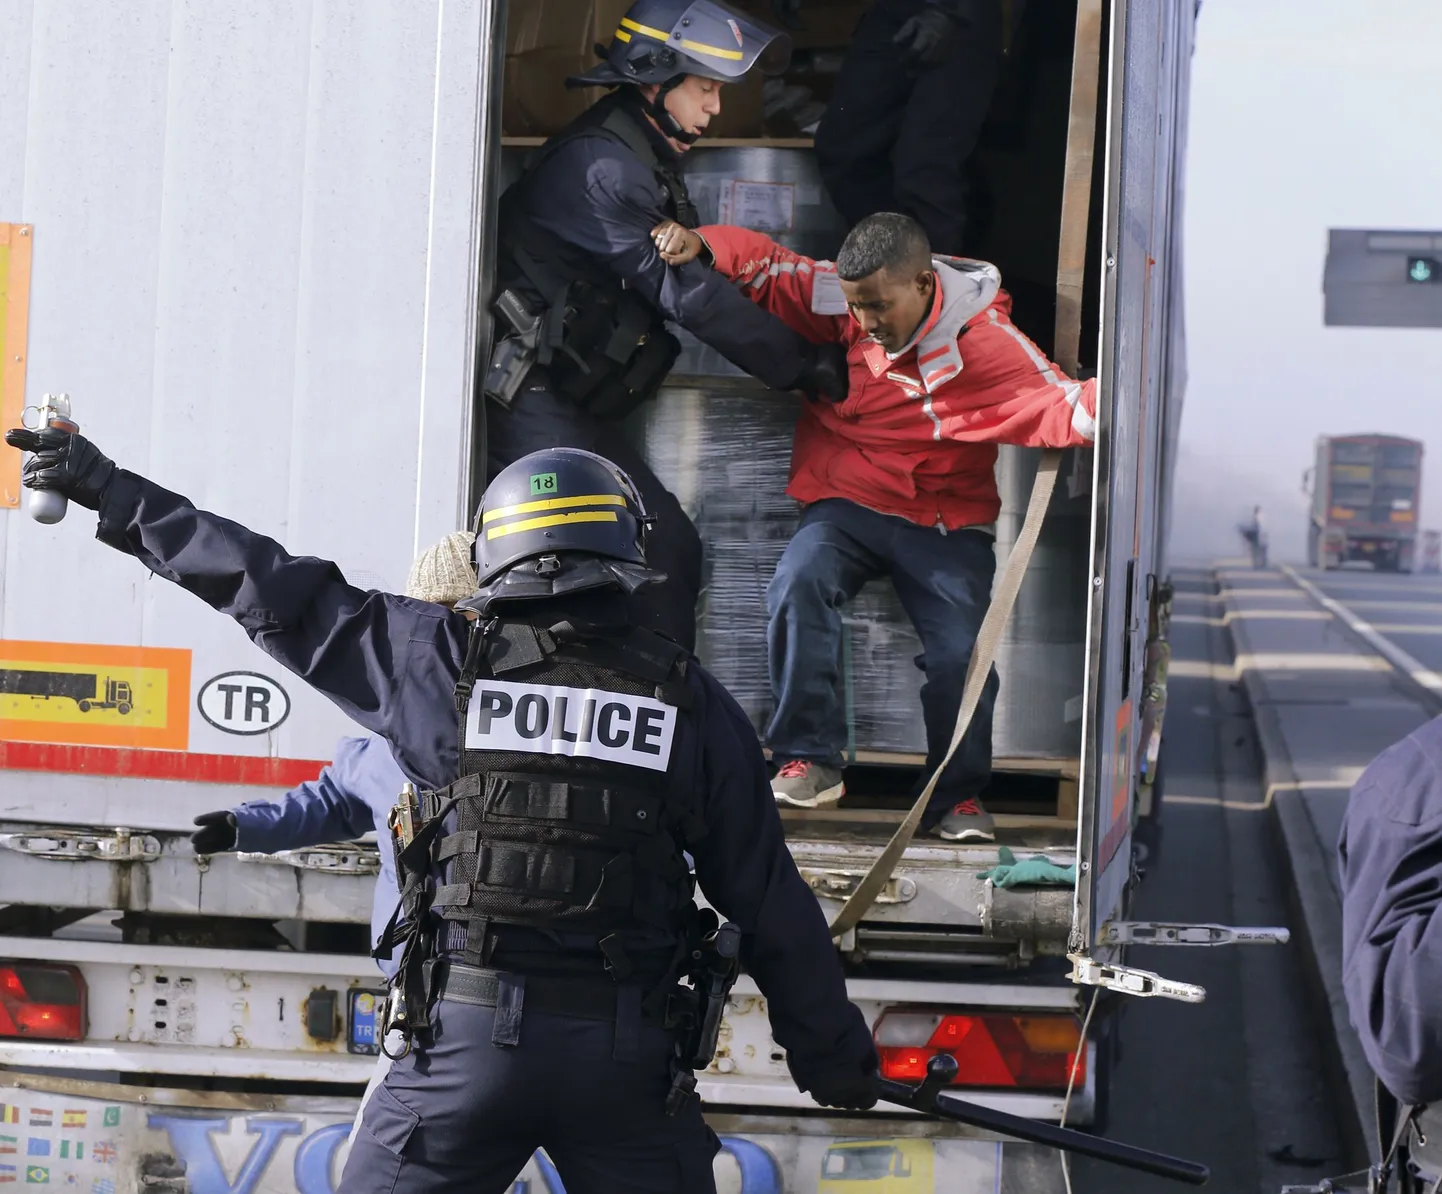 Prantsuse märulipolitsei tõstab Calais' sadamas ühest veokist välja seal end varjanud migranti.